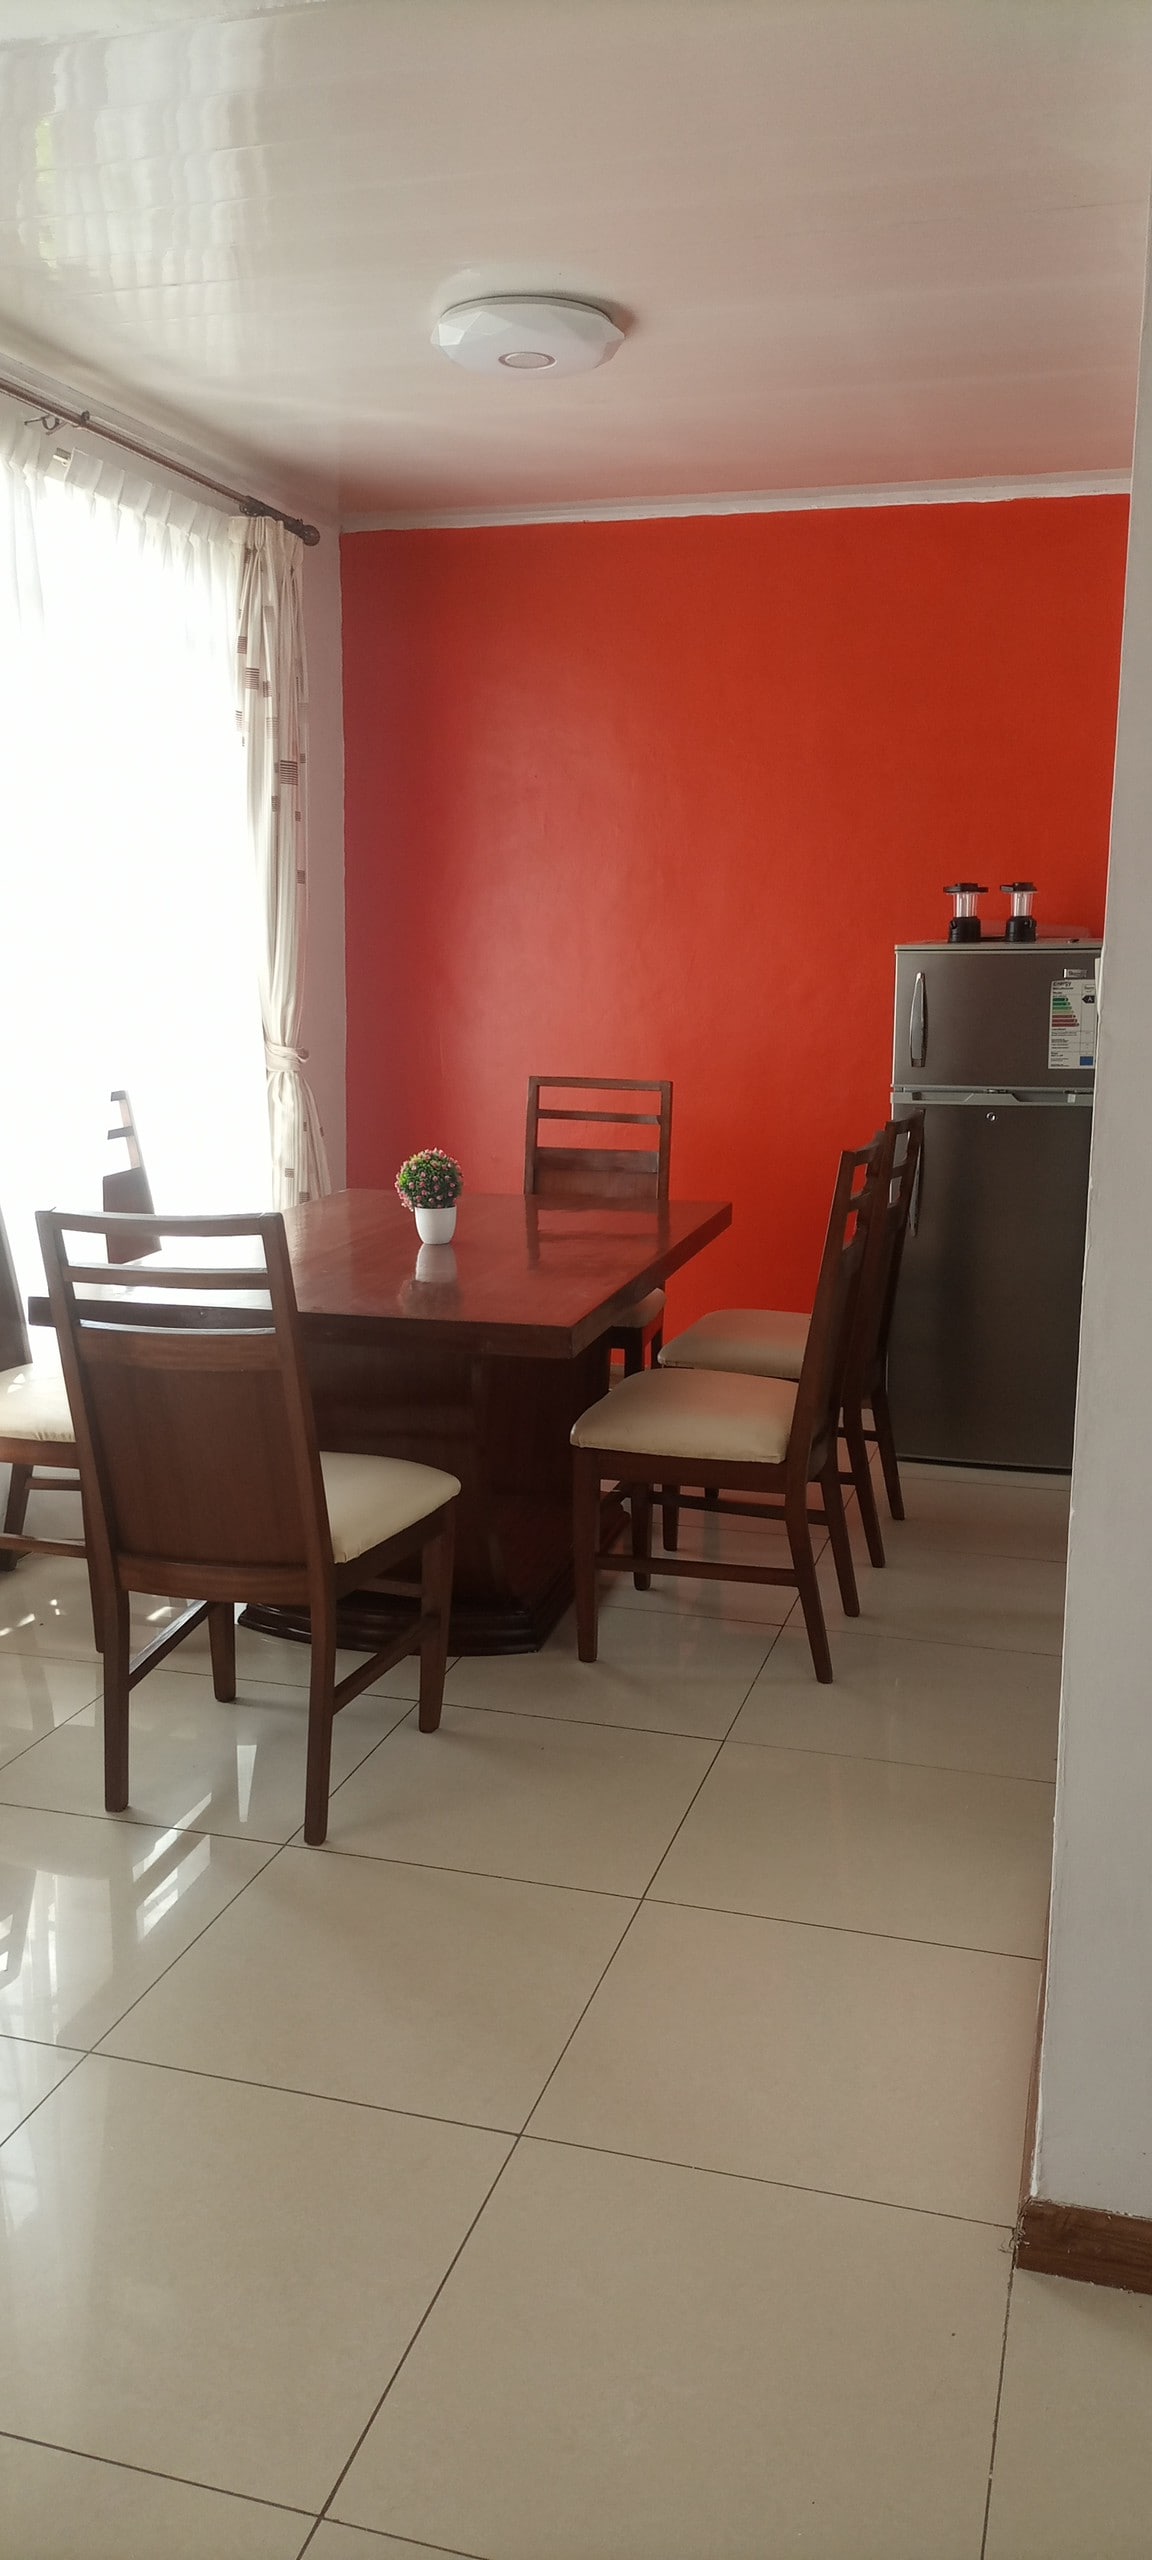 Lovely 3bedroom furnished aparment in Jacaranda